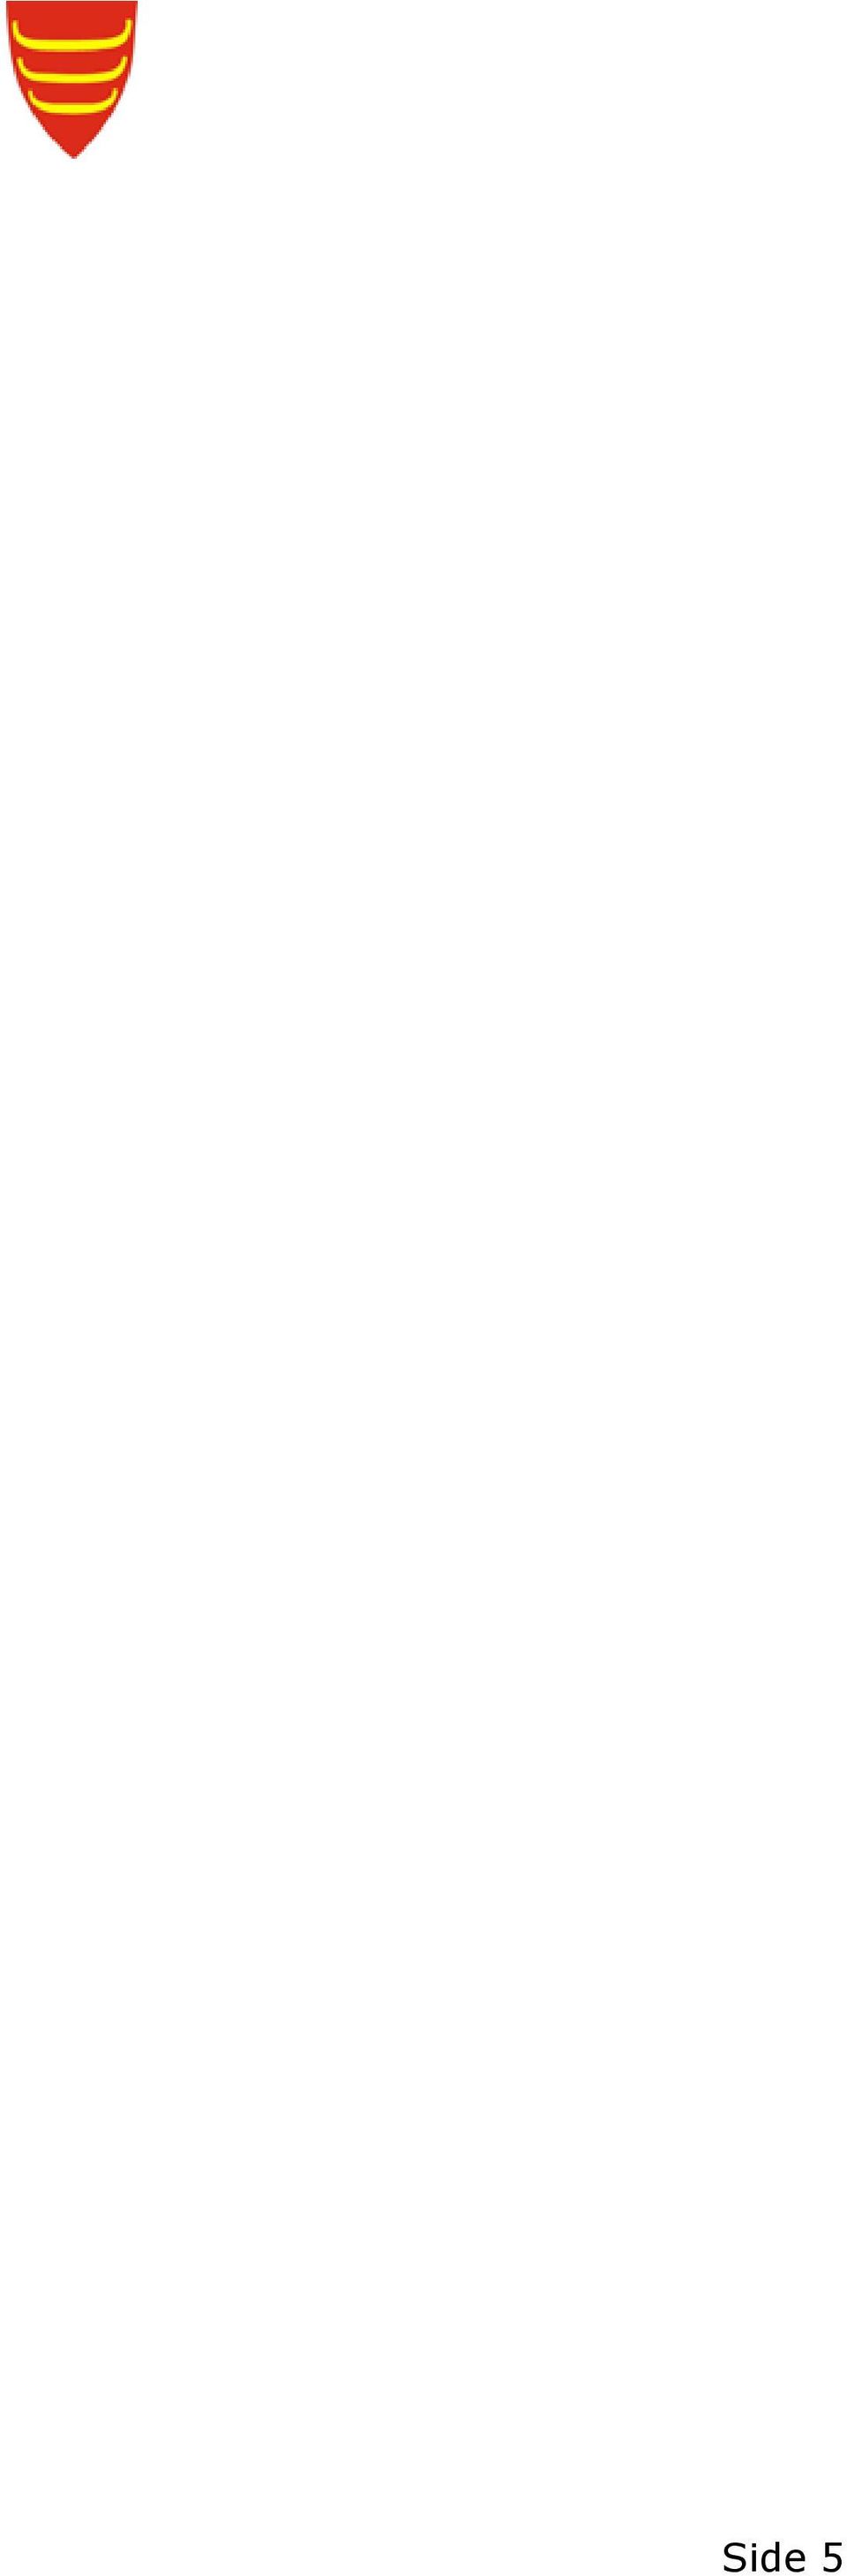 24.01.2011 Budsjett 2011 - Økonomiplan 2011-2014 - avklaringer innen pleie- og omsorgstjenesten Rådmannens forslag til vedtak Saksopplysninger Tana kommunestyre vedtok i sitt møte 15.12.